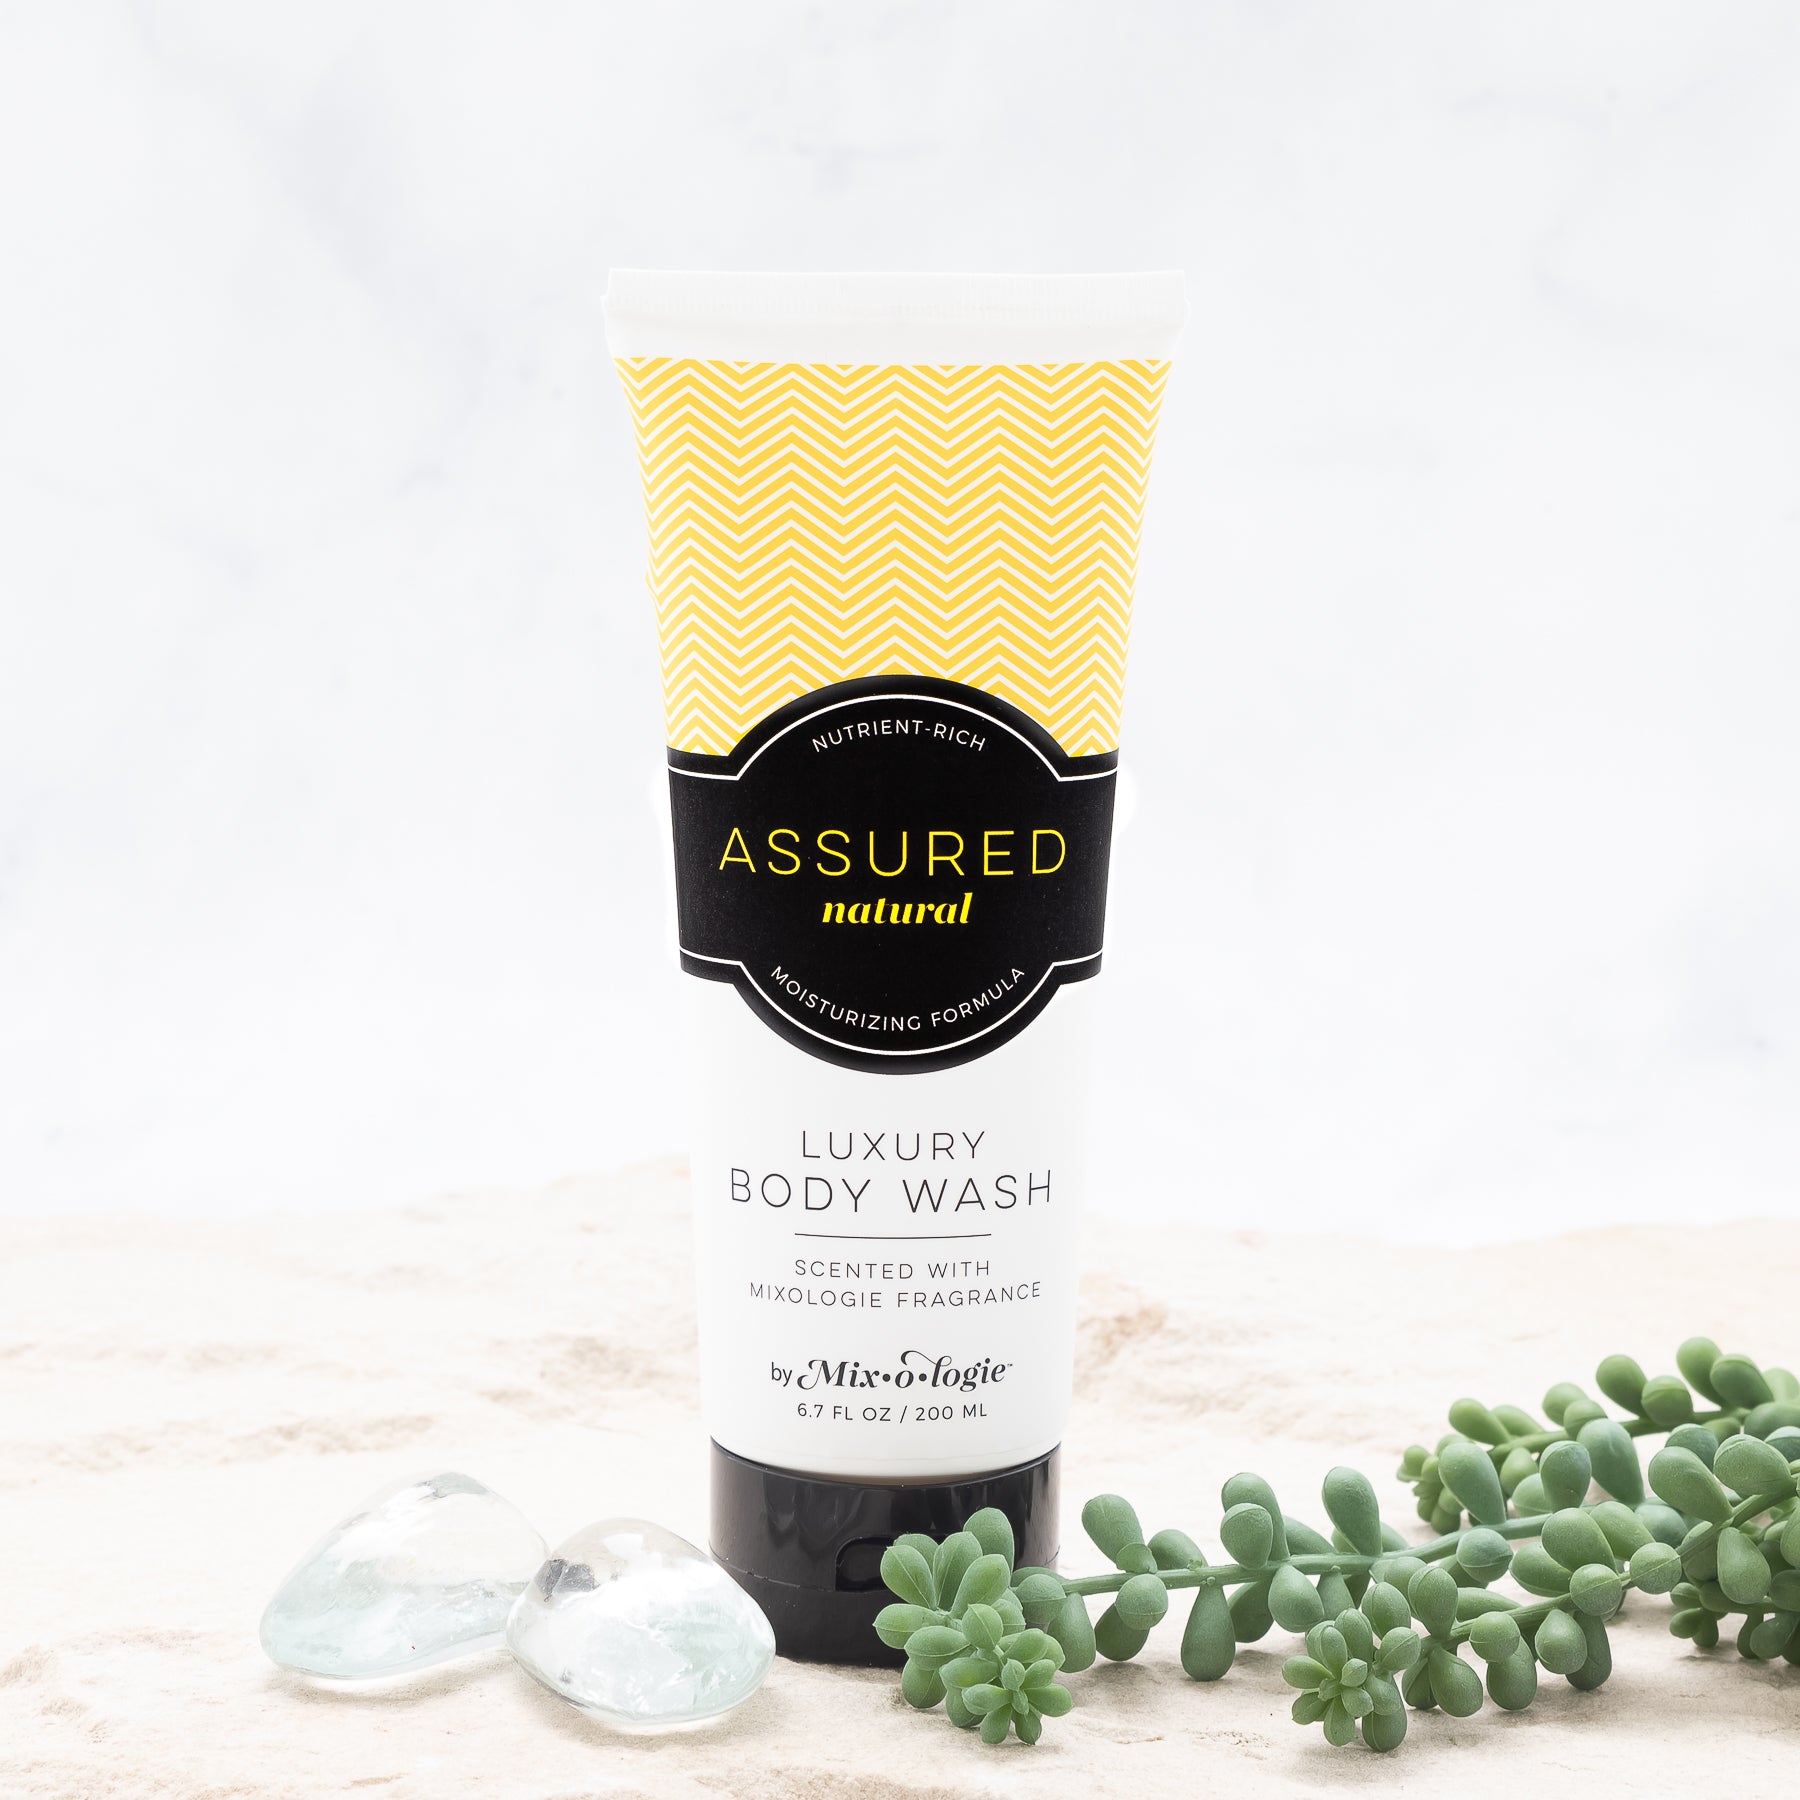 Luxury Body Wash & Shower Gel - Assured (natural) scent